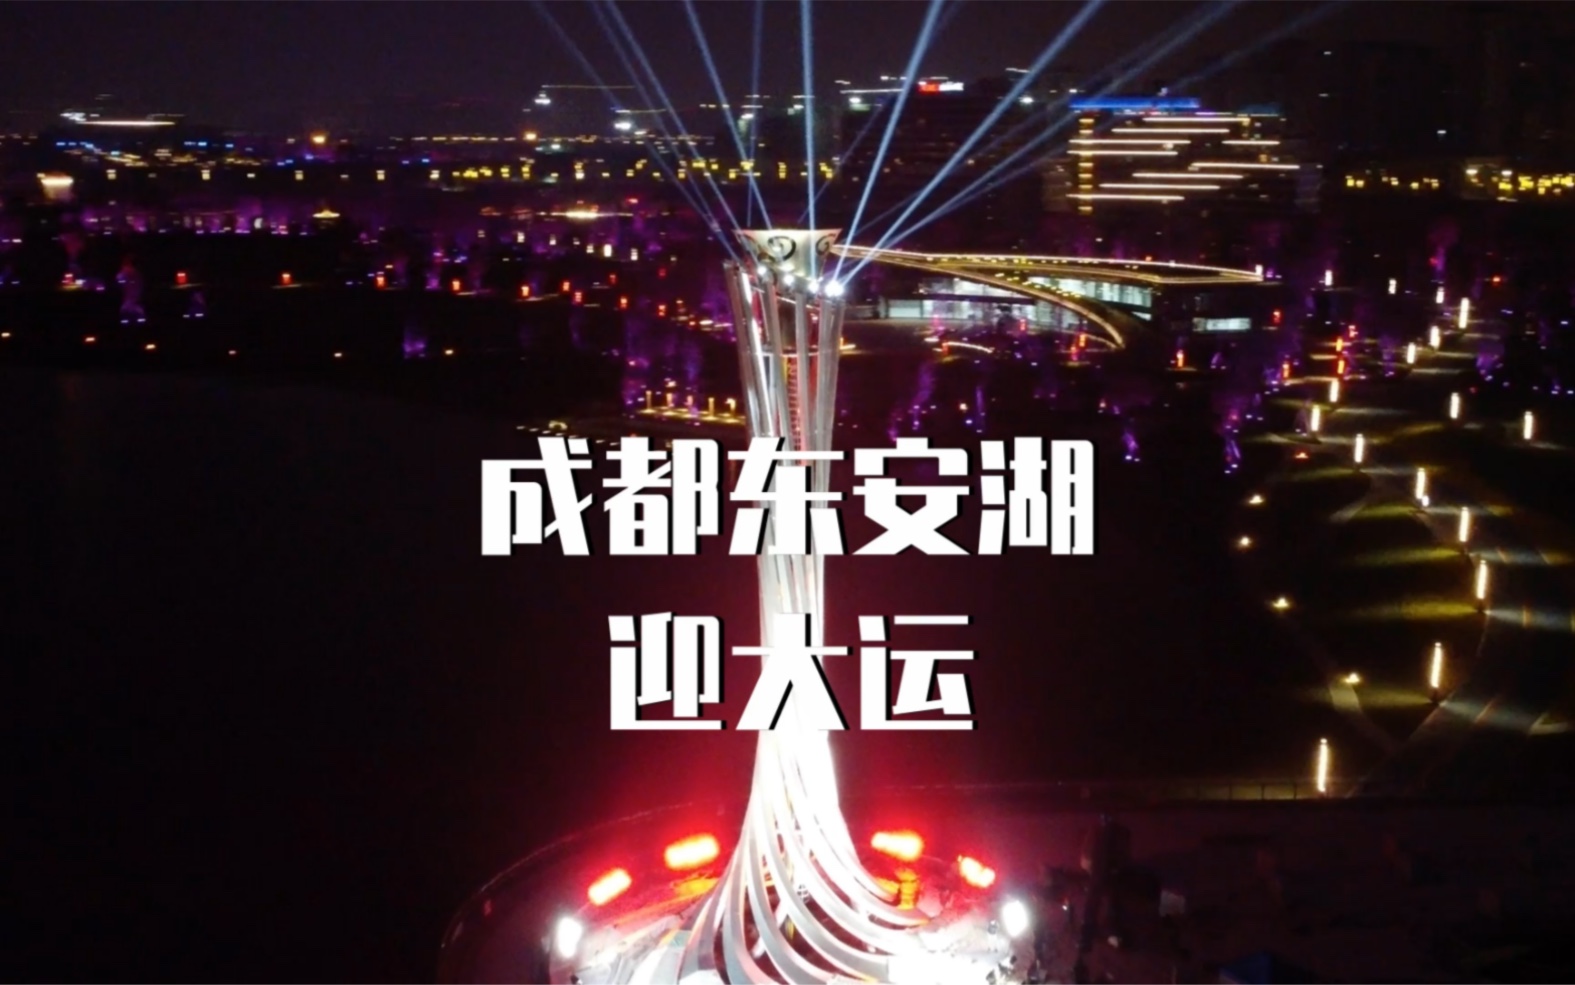 成都东安湖体育中心大运会火炬灯光秀